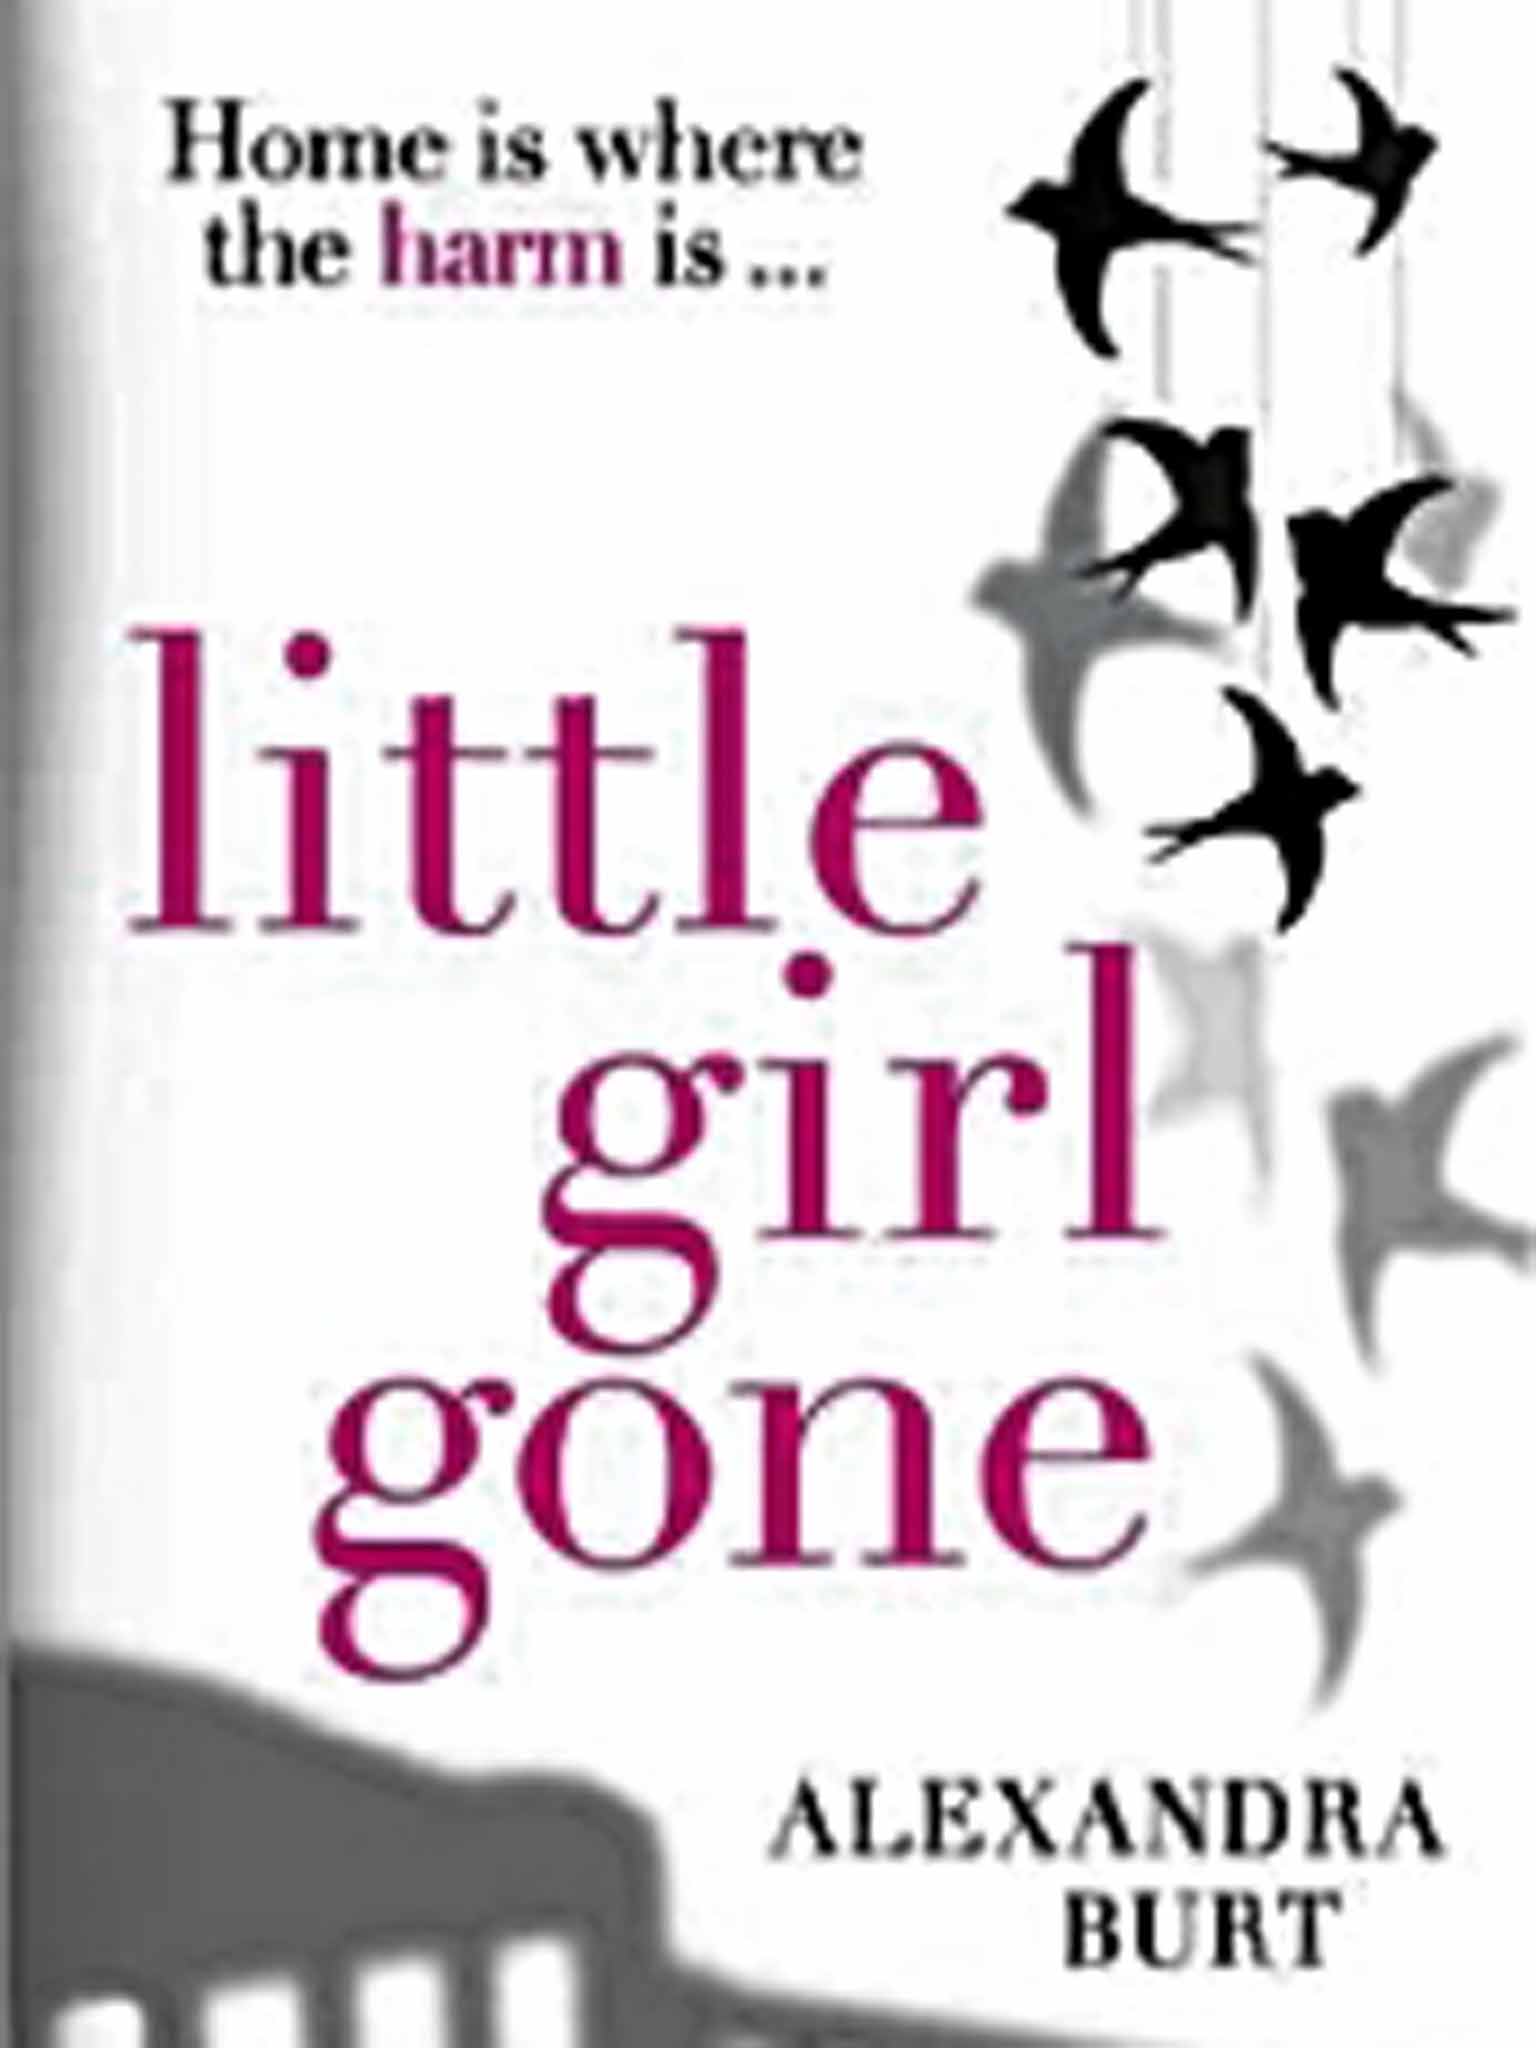 Little Girl Gone